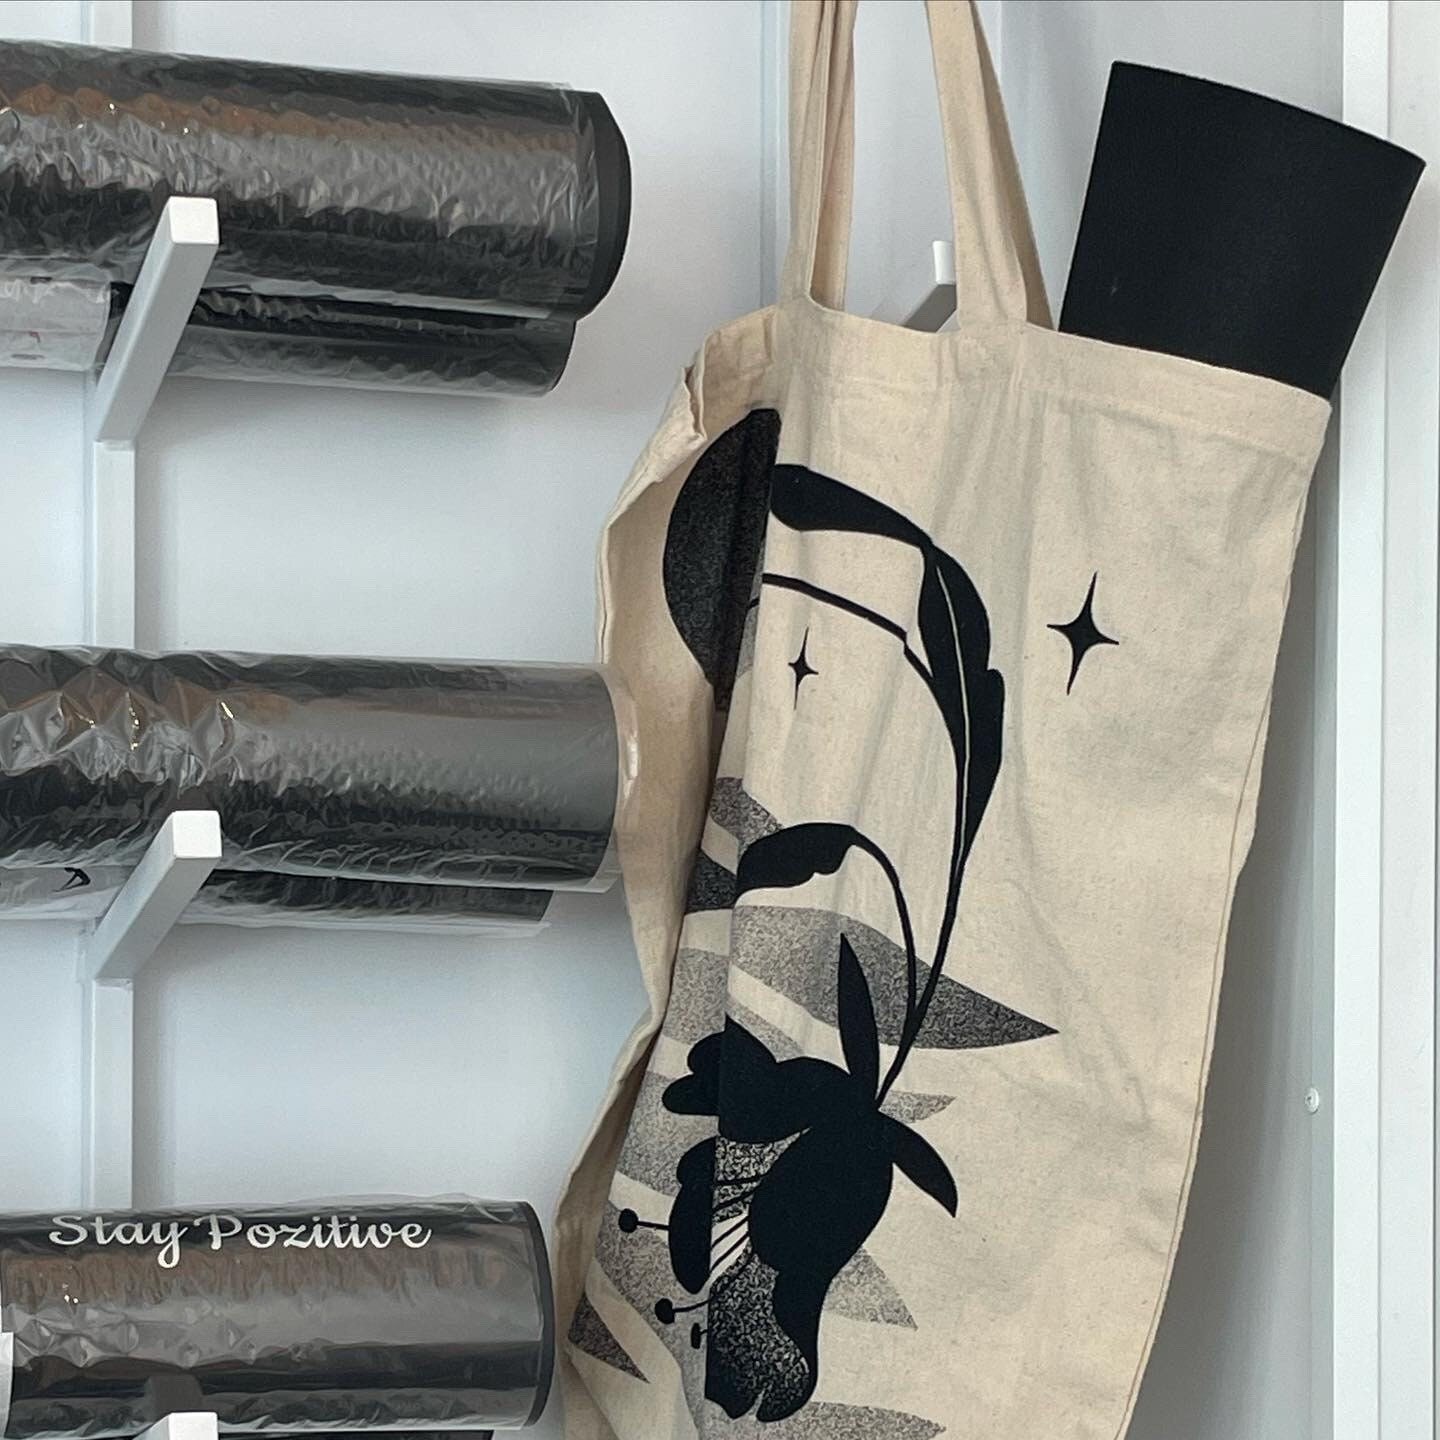 Organic Cotton Shopper Eco-Bag – Rio Yoga